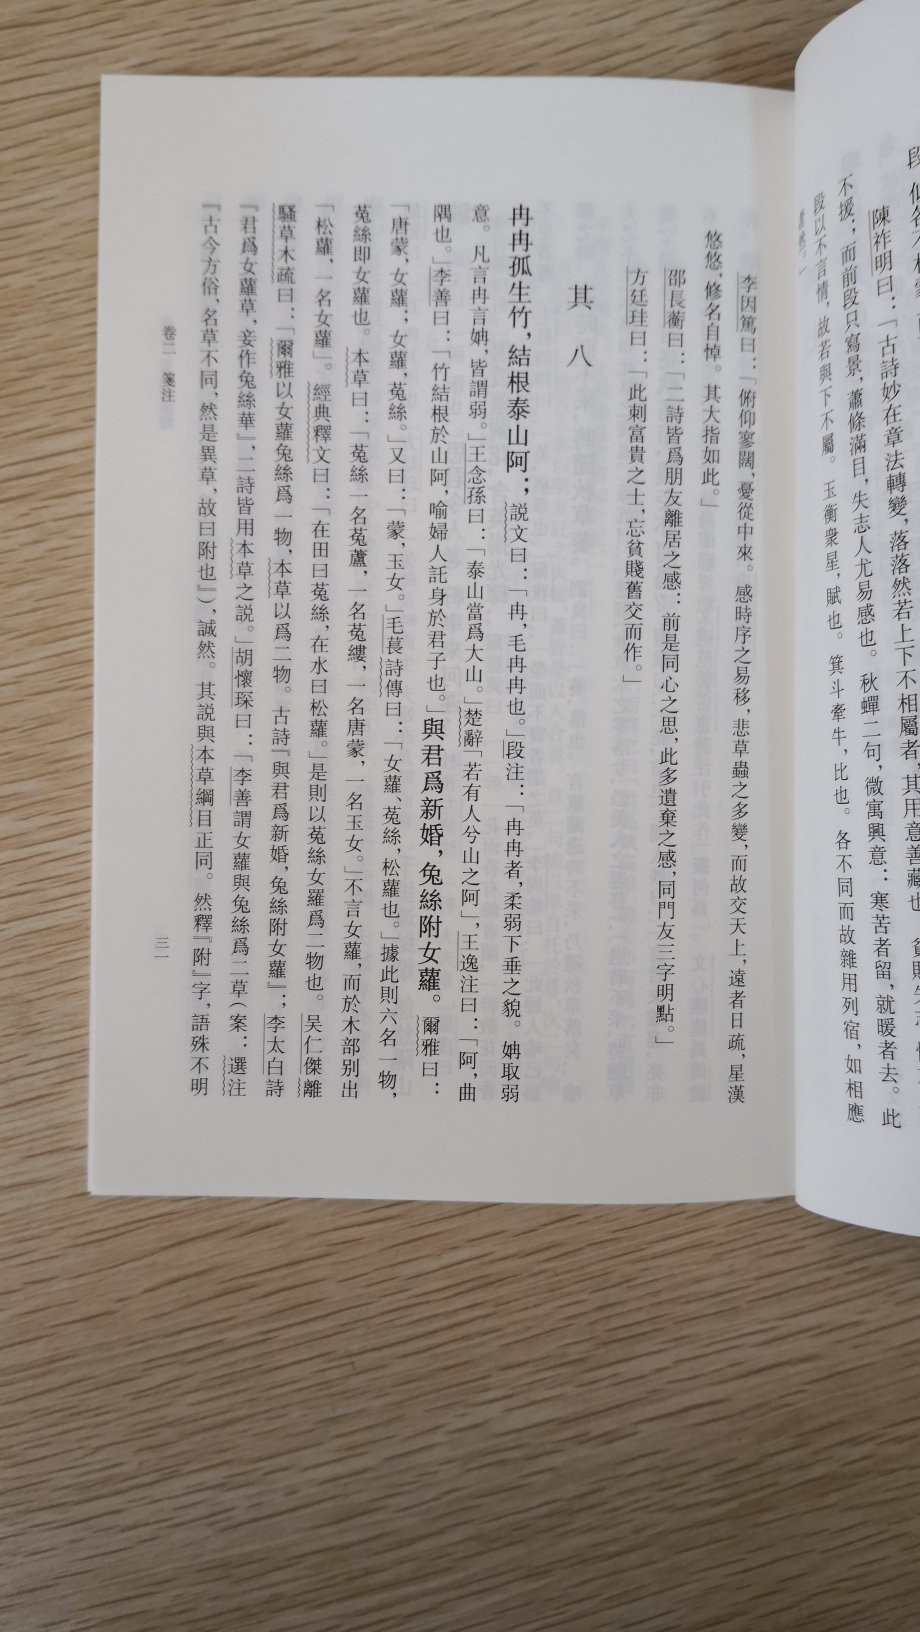 中华书局出版的书质量很好，这种还是繁体竖版的。